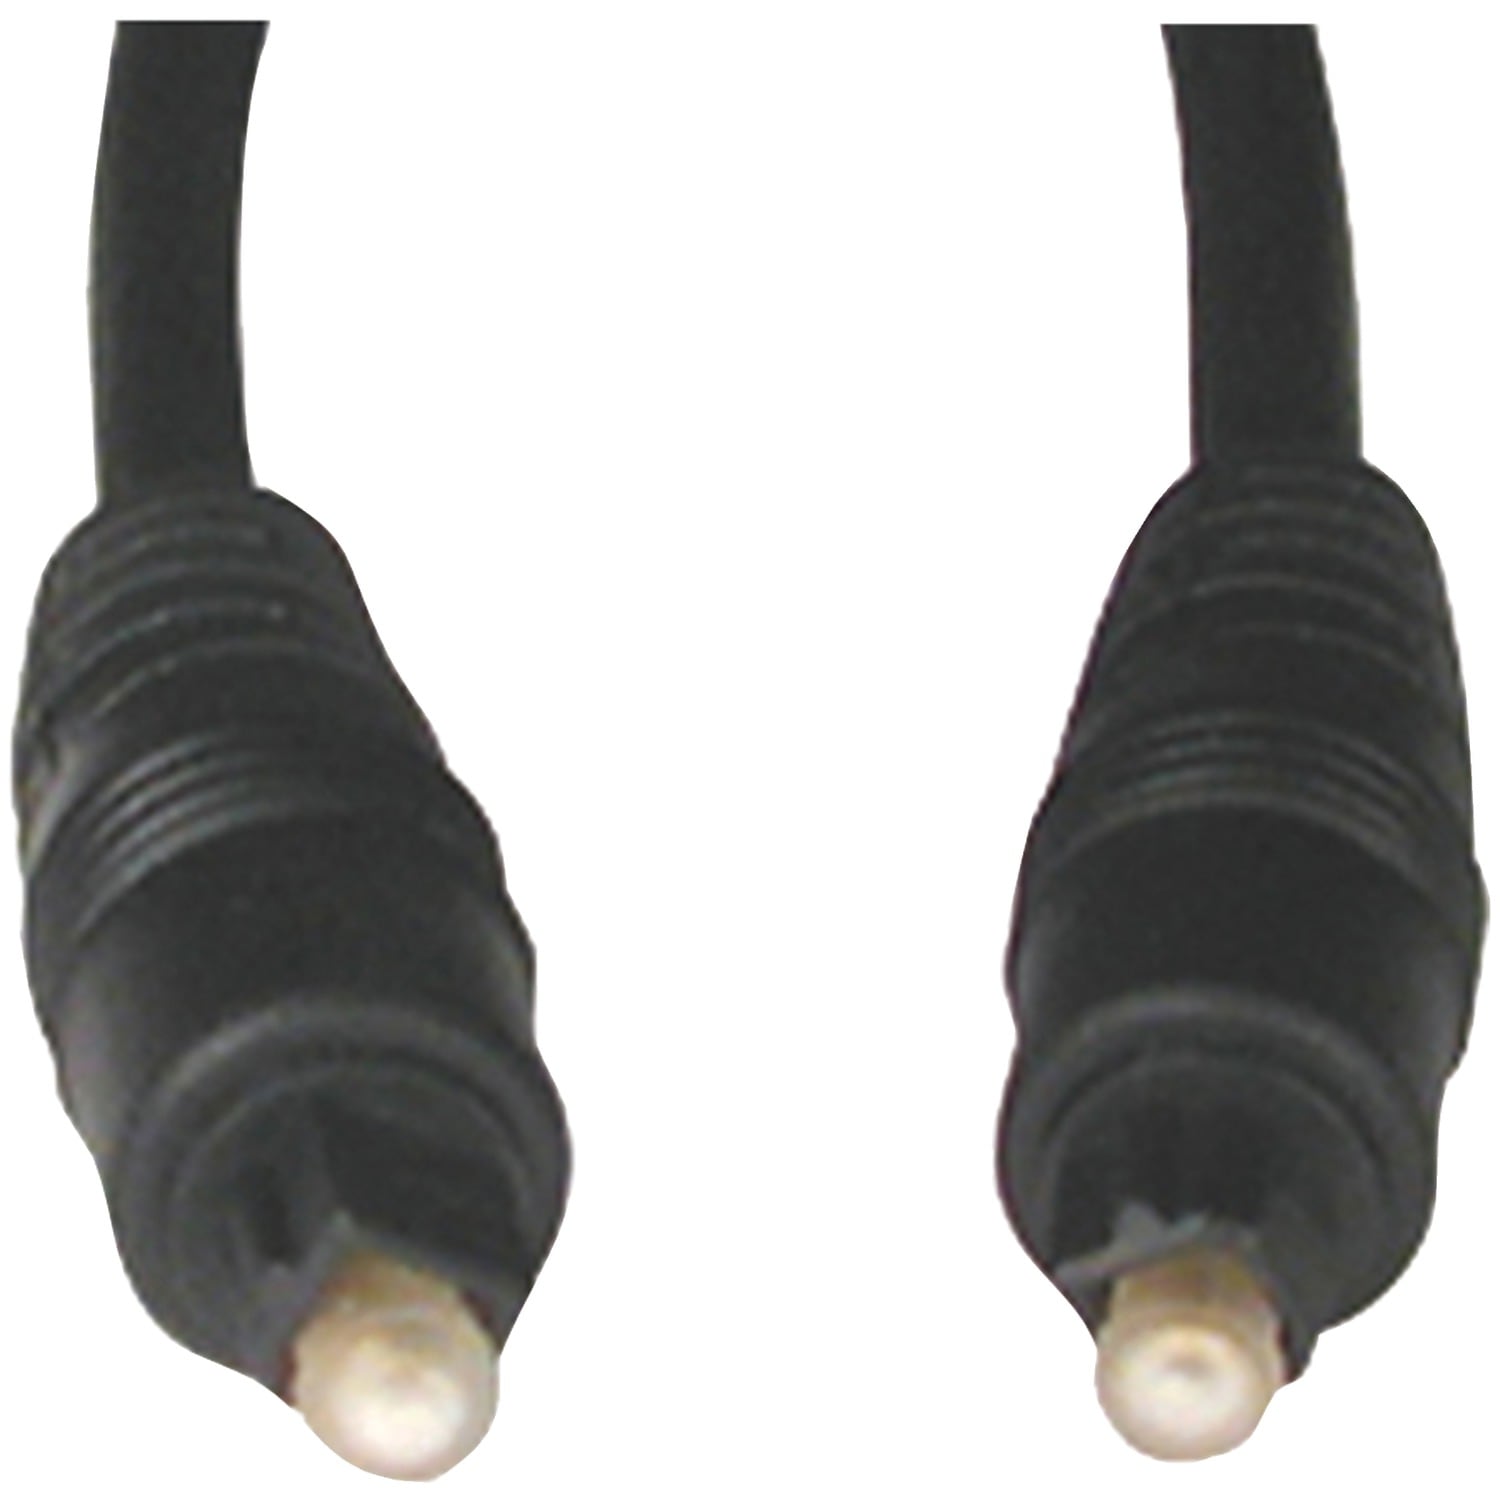 Basics Câble optique audio numérique TOSLINK 1,83 m & Câble audio  numérique coaxial - 2,5 m